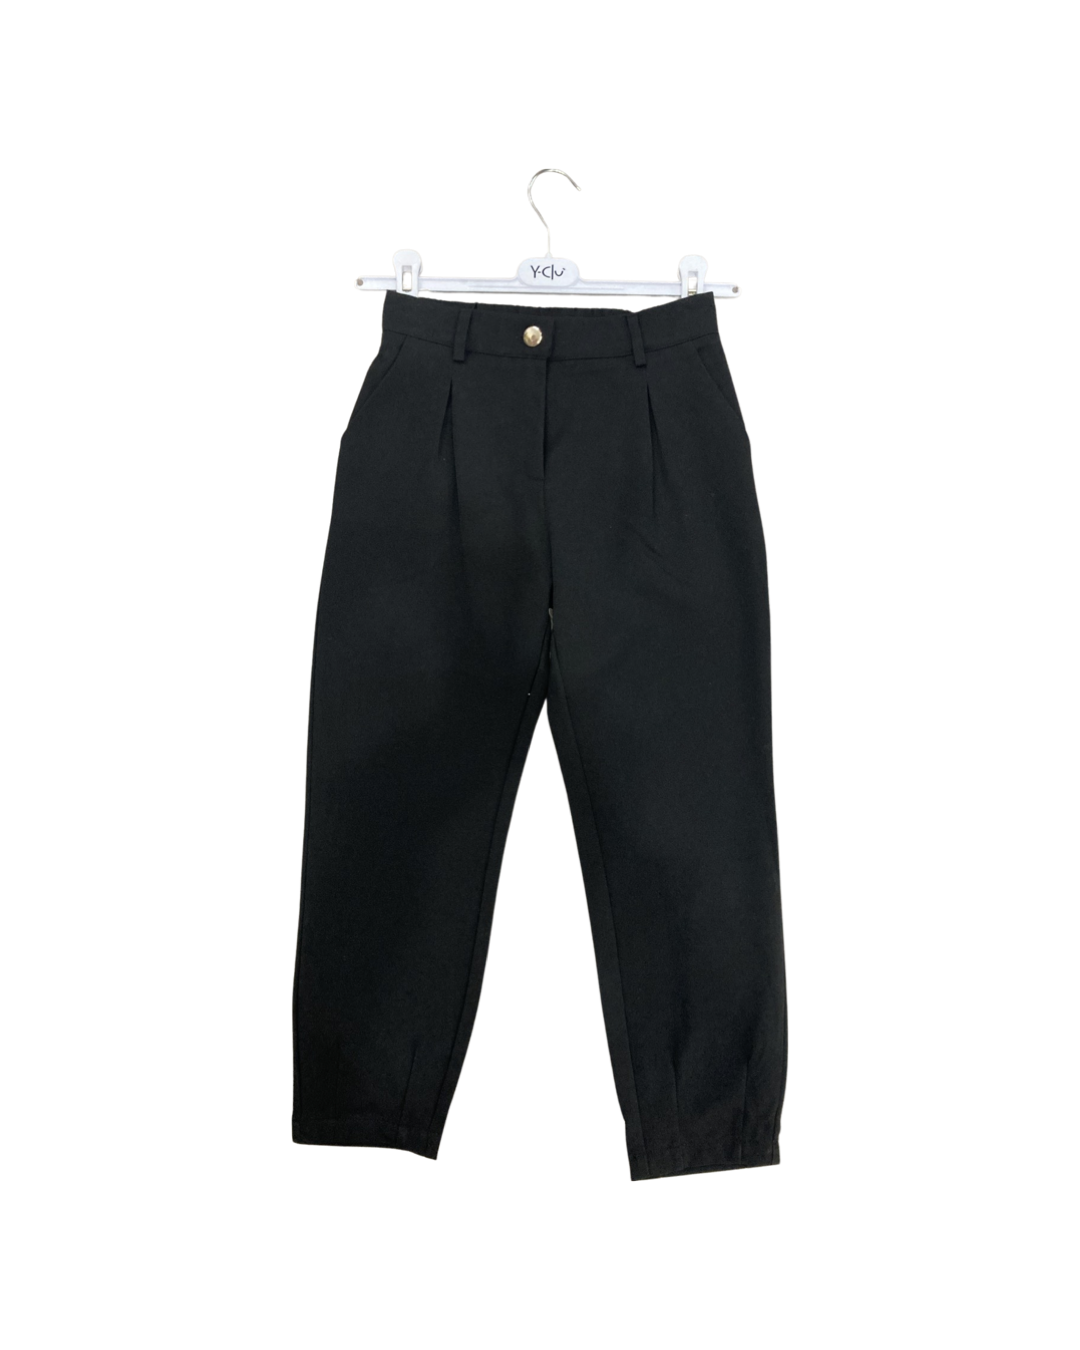 pantalone , Pantalone colore nero per bambina da 8anni a 16anni Y-Clù Y18093 - BabyBimbo 0-16, abbigliamento bambini